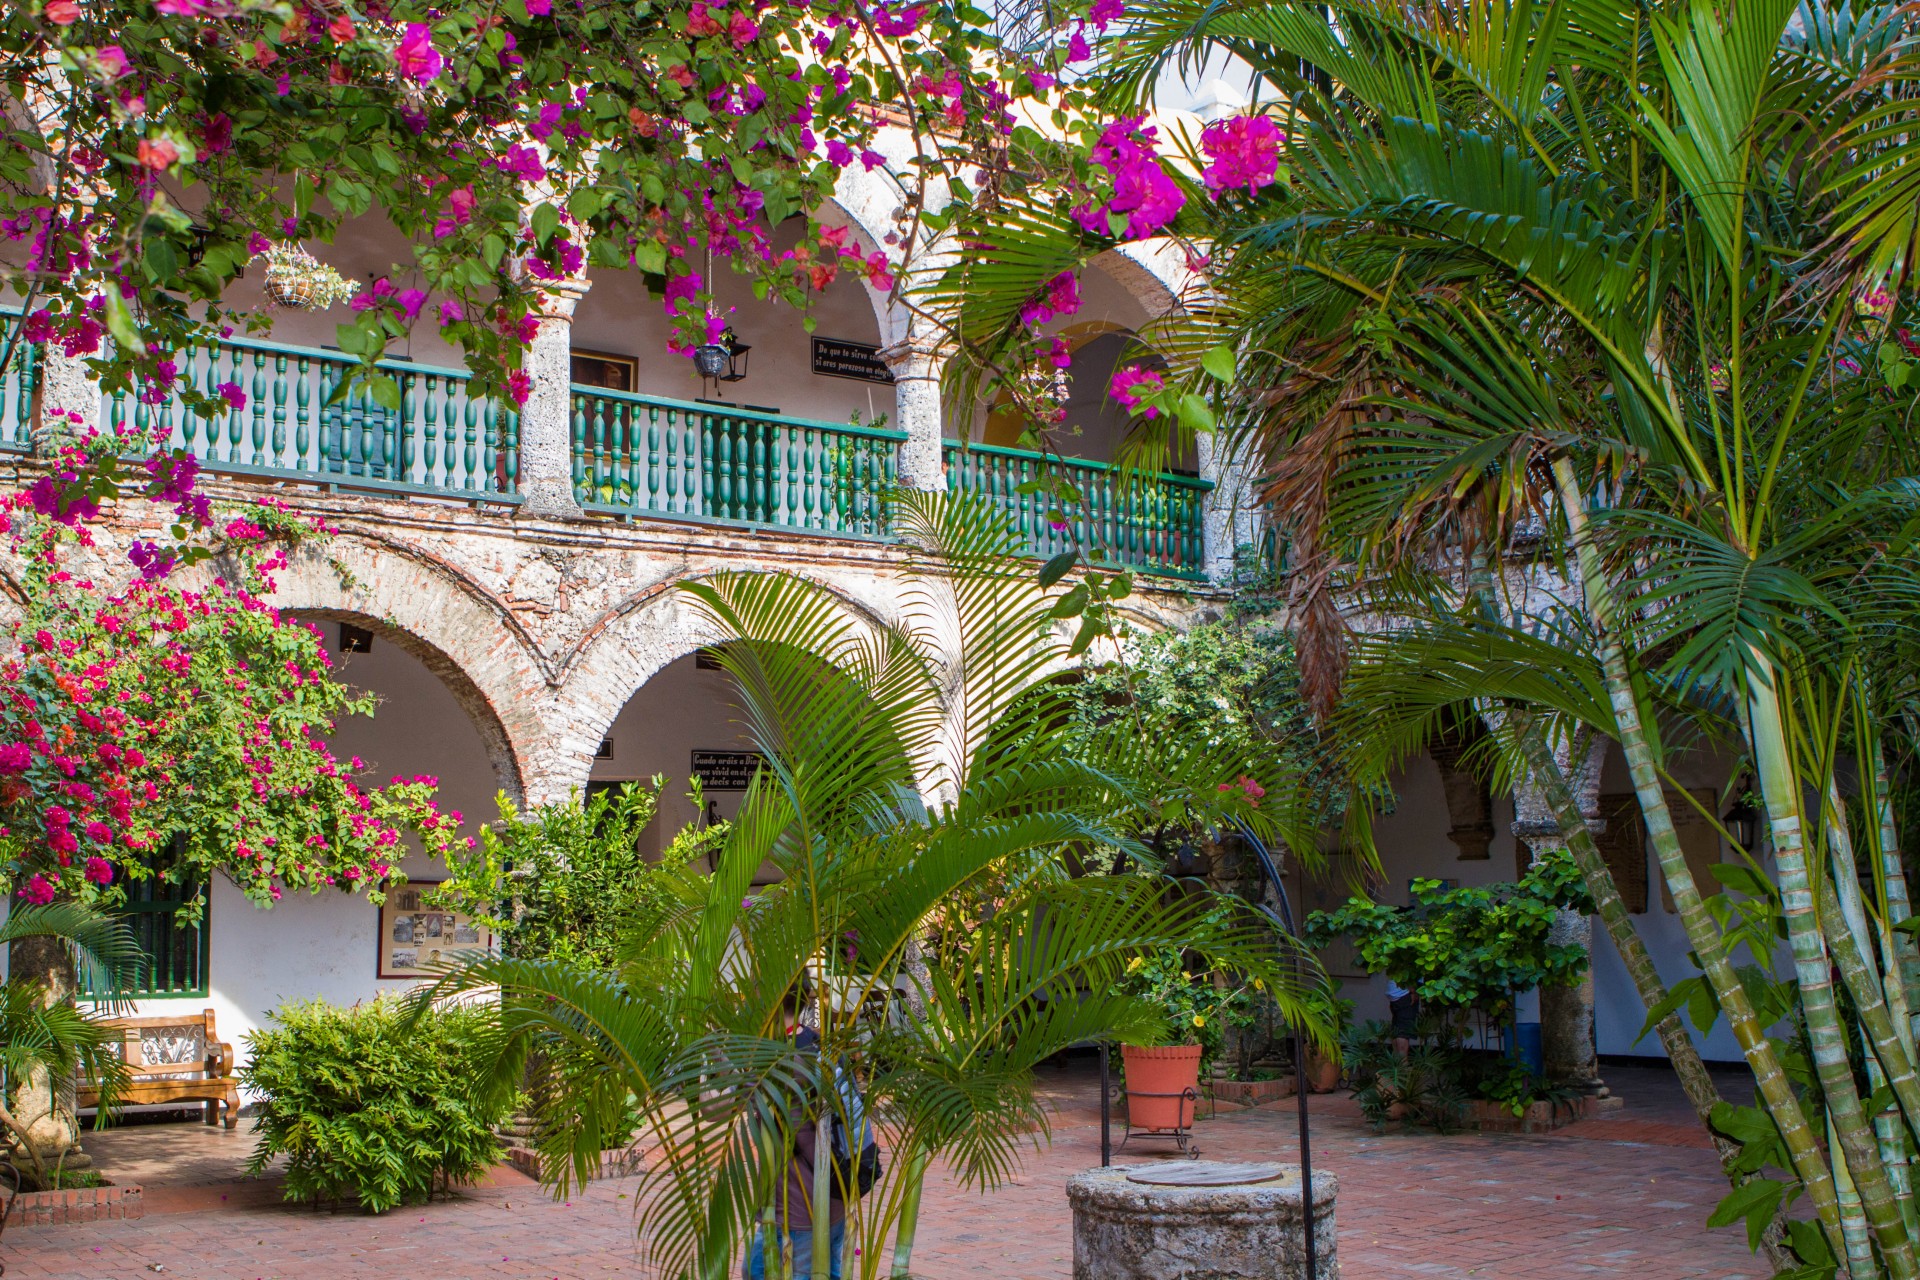 Cartagena - Courtyard at the Convento de la Popa